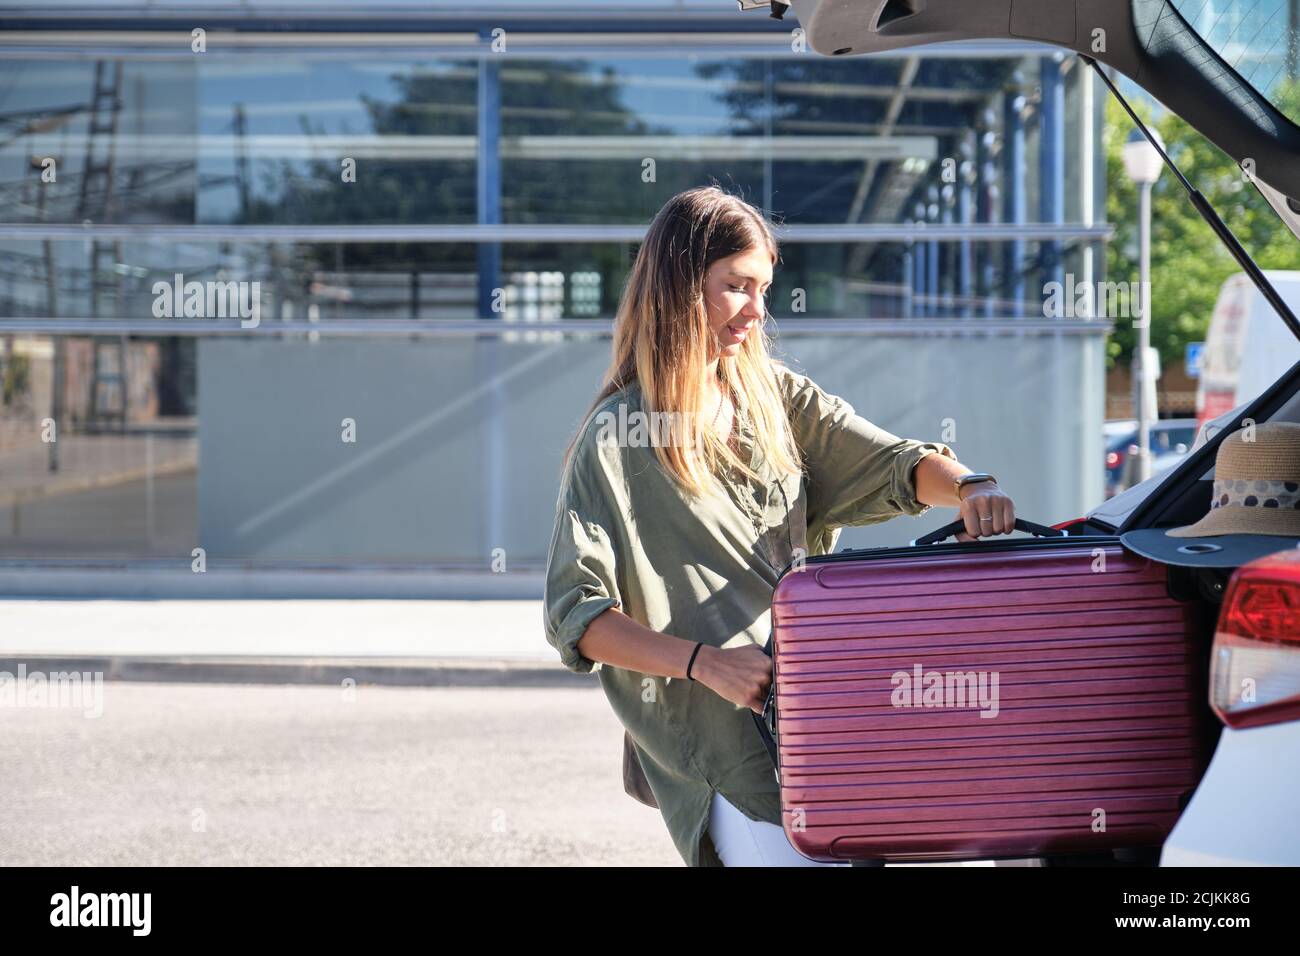 Une jeune femme empaquit sa valise dans le coffre à bagages de la voiture. Concept de vacances. Banque D'Images